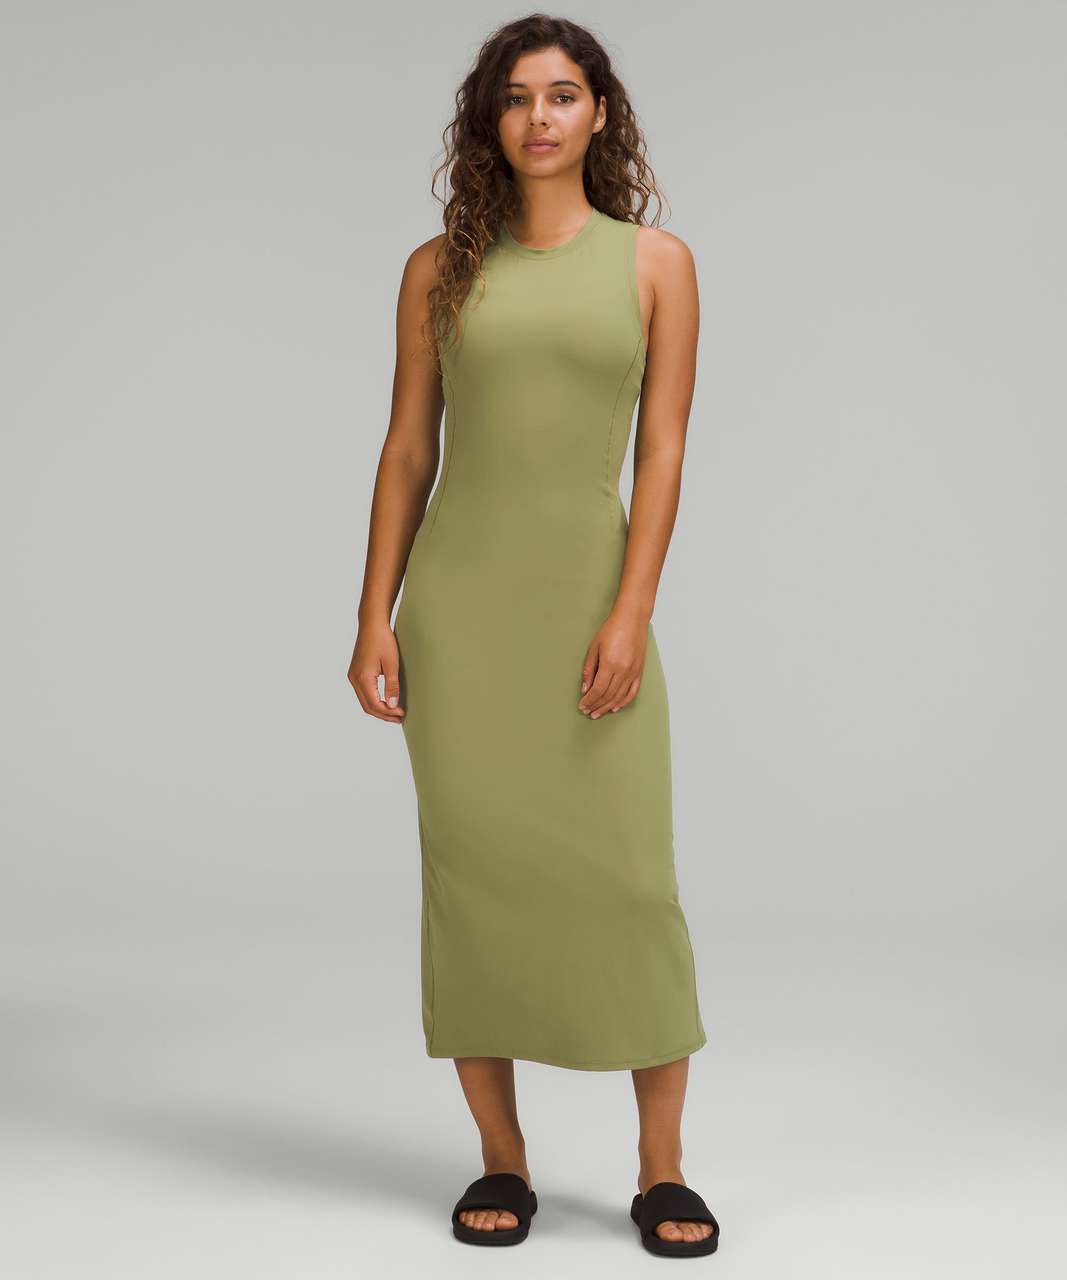 Lululemon All Aligned Midi Dress - Bronze Green